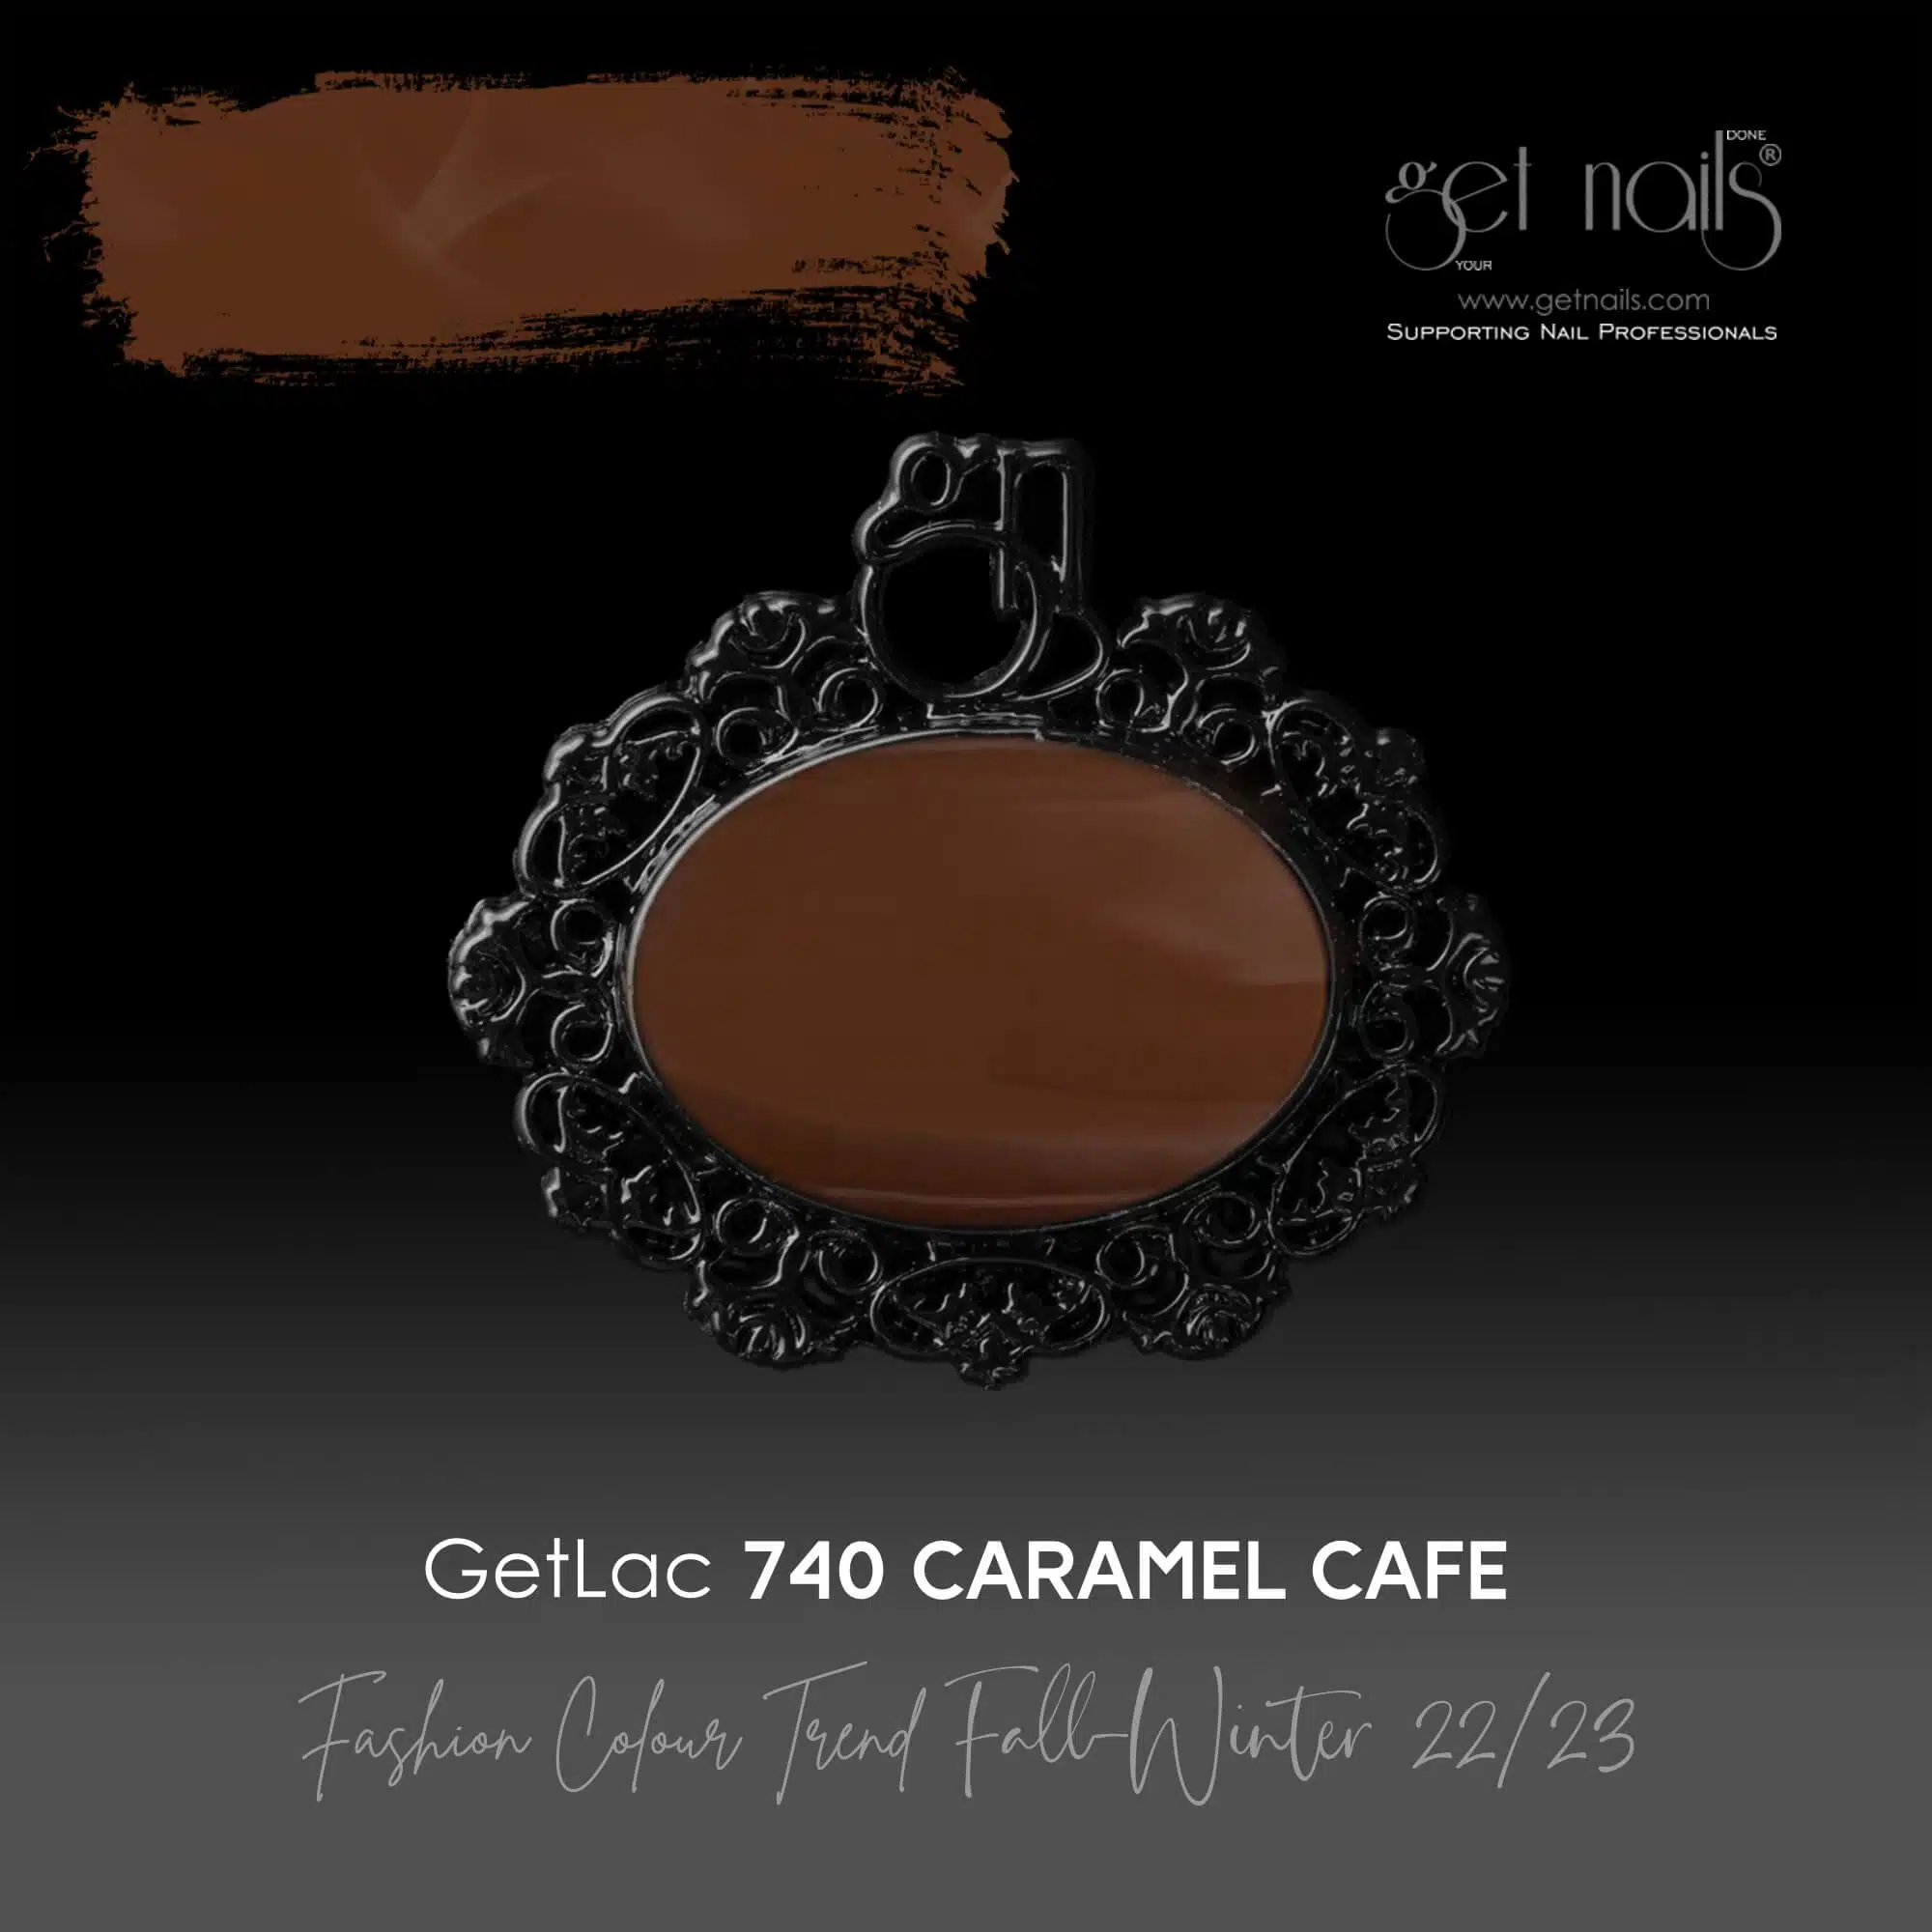 Get Nails Austria - GetLac 740 Caramel Cafe 15g